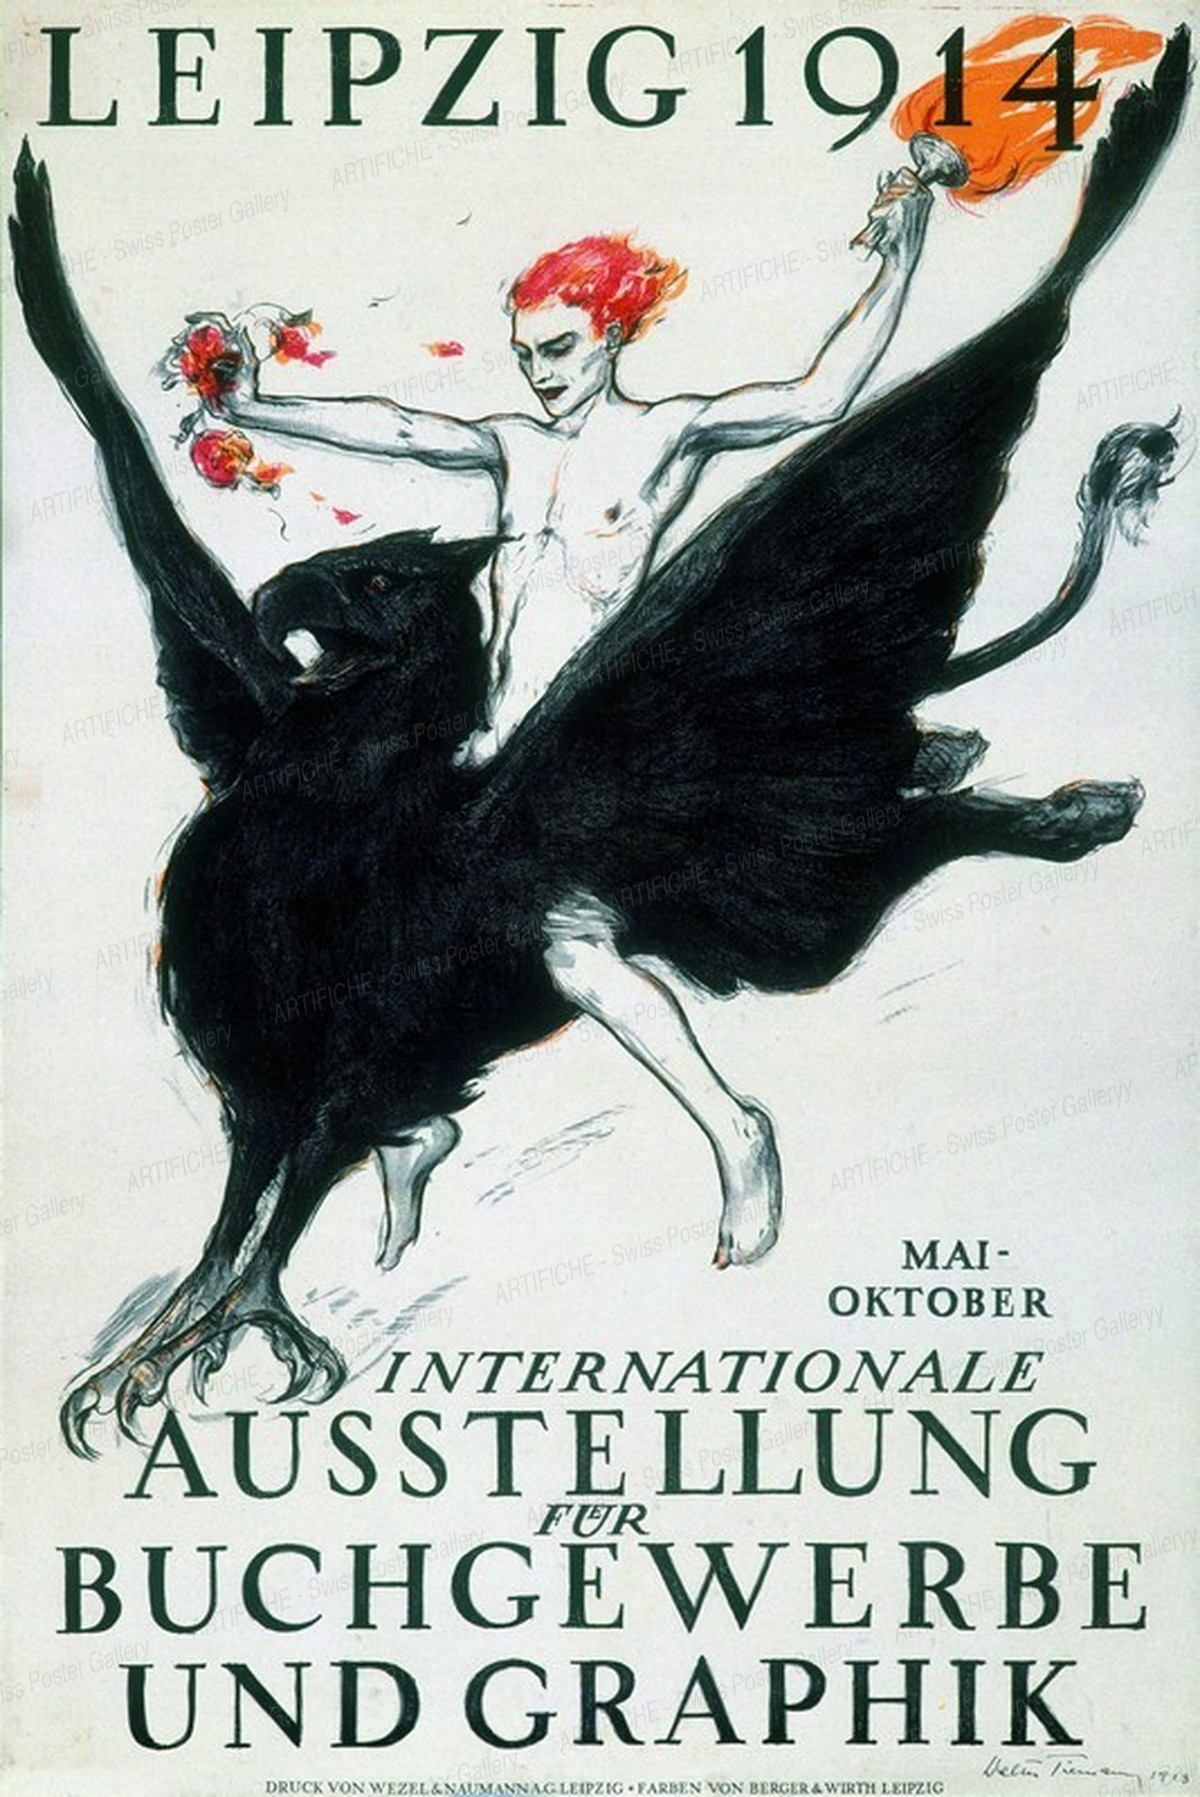 LEIPZIG 1914 – Internationale Ausstellung für Buchgewerbe & Grafik, Walter Tiemann